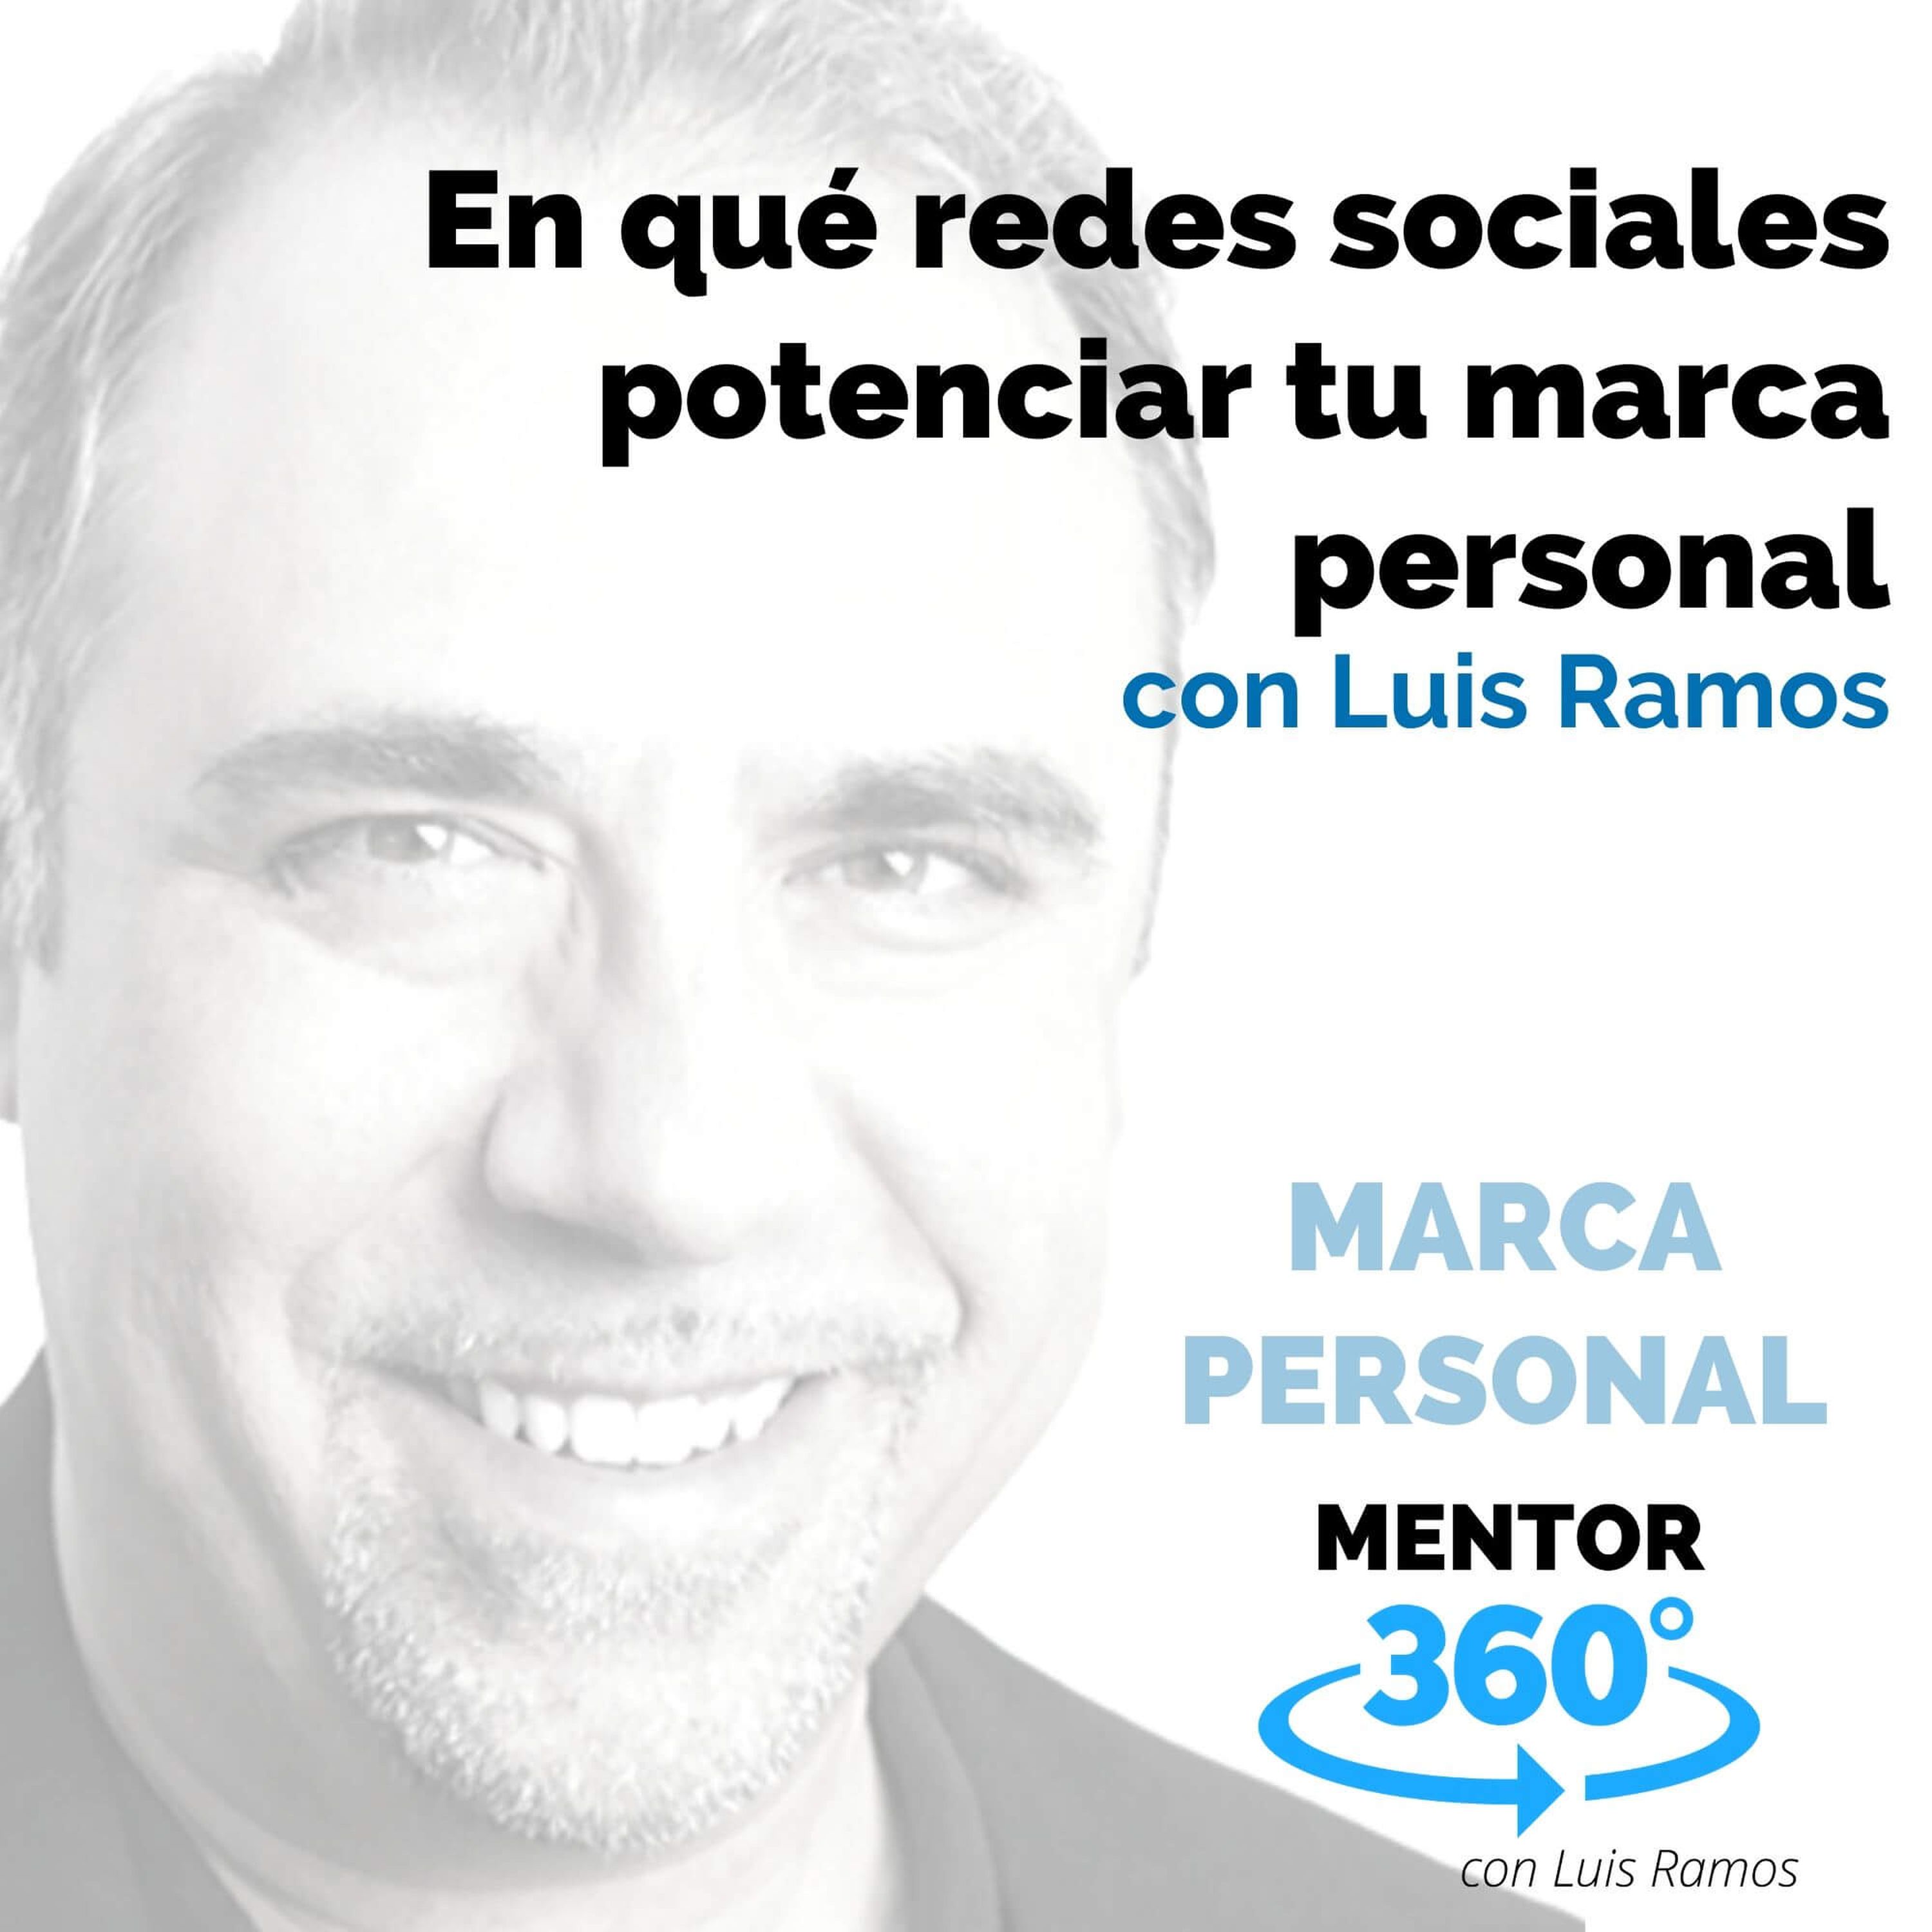 En qué redes sociales potenciar tu marca personal, con Luis Ramos - MARCA PERSONAL